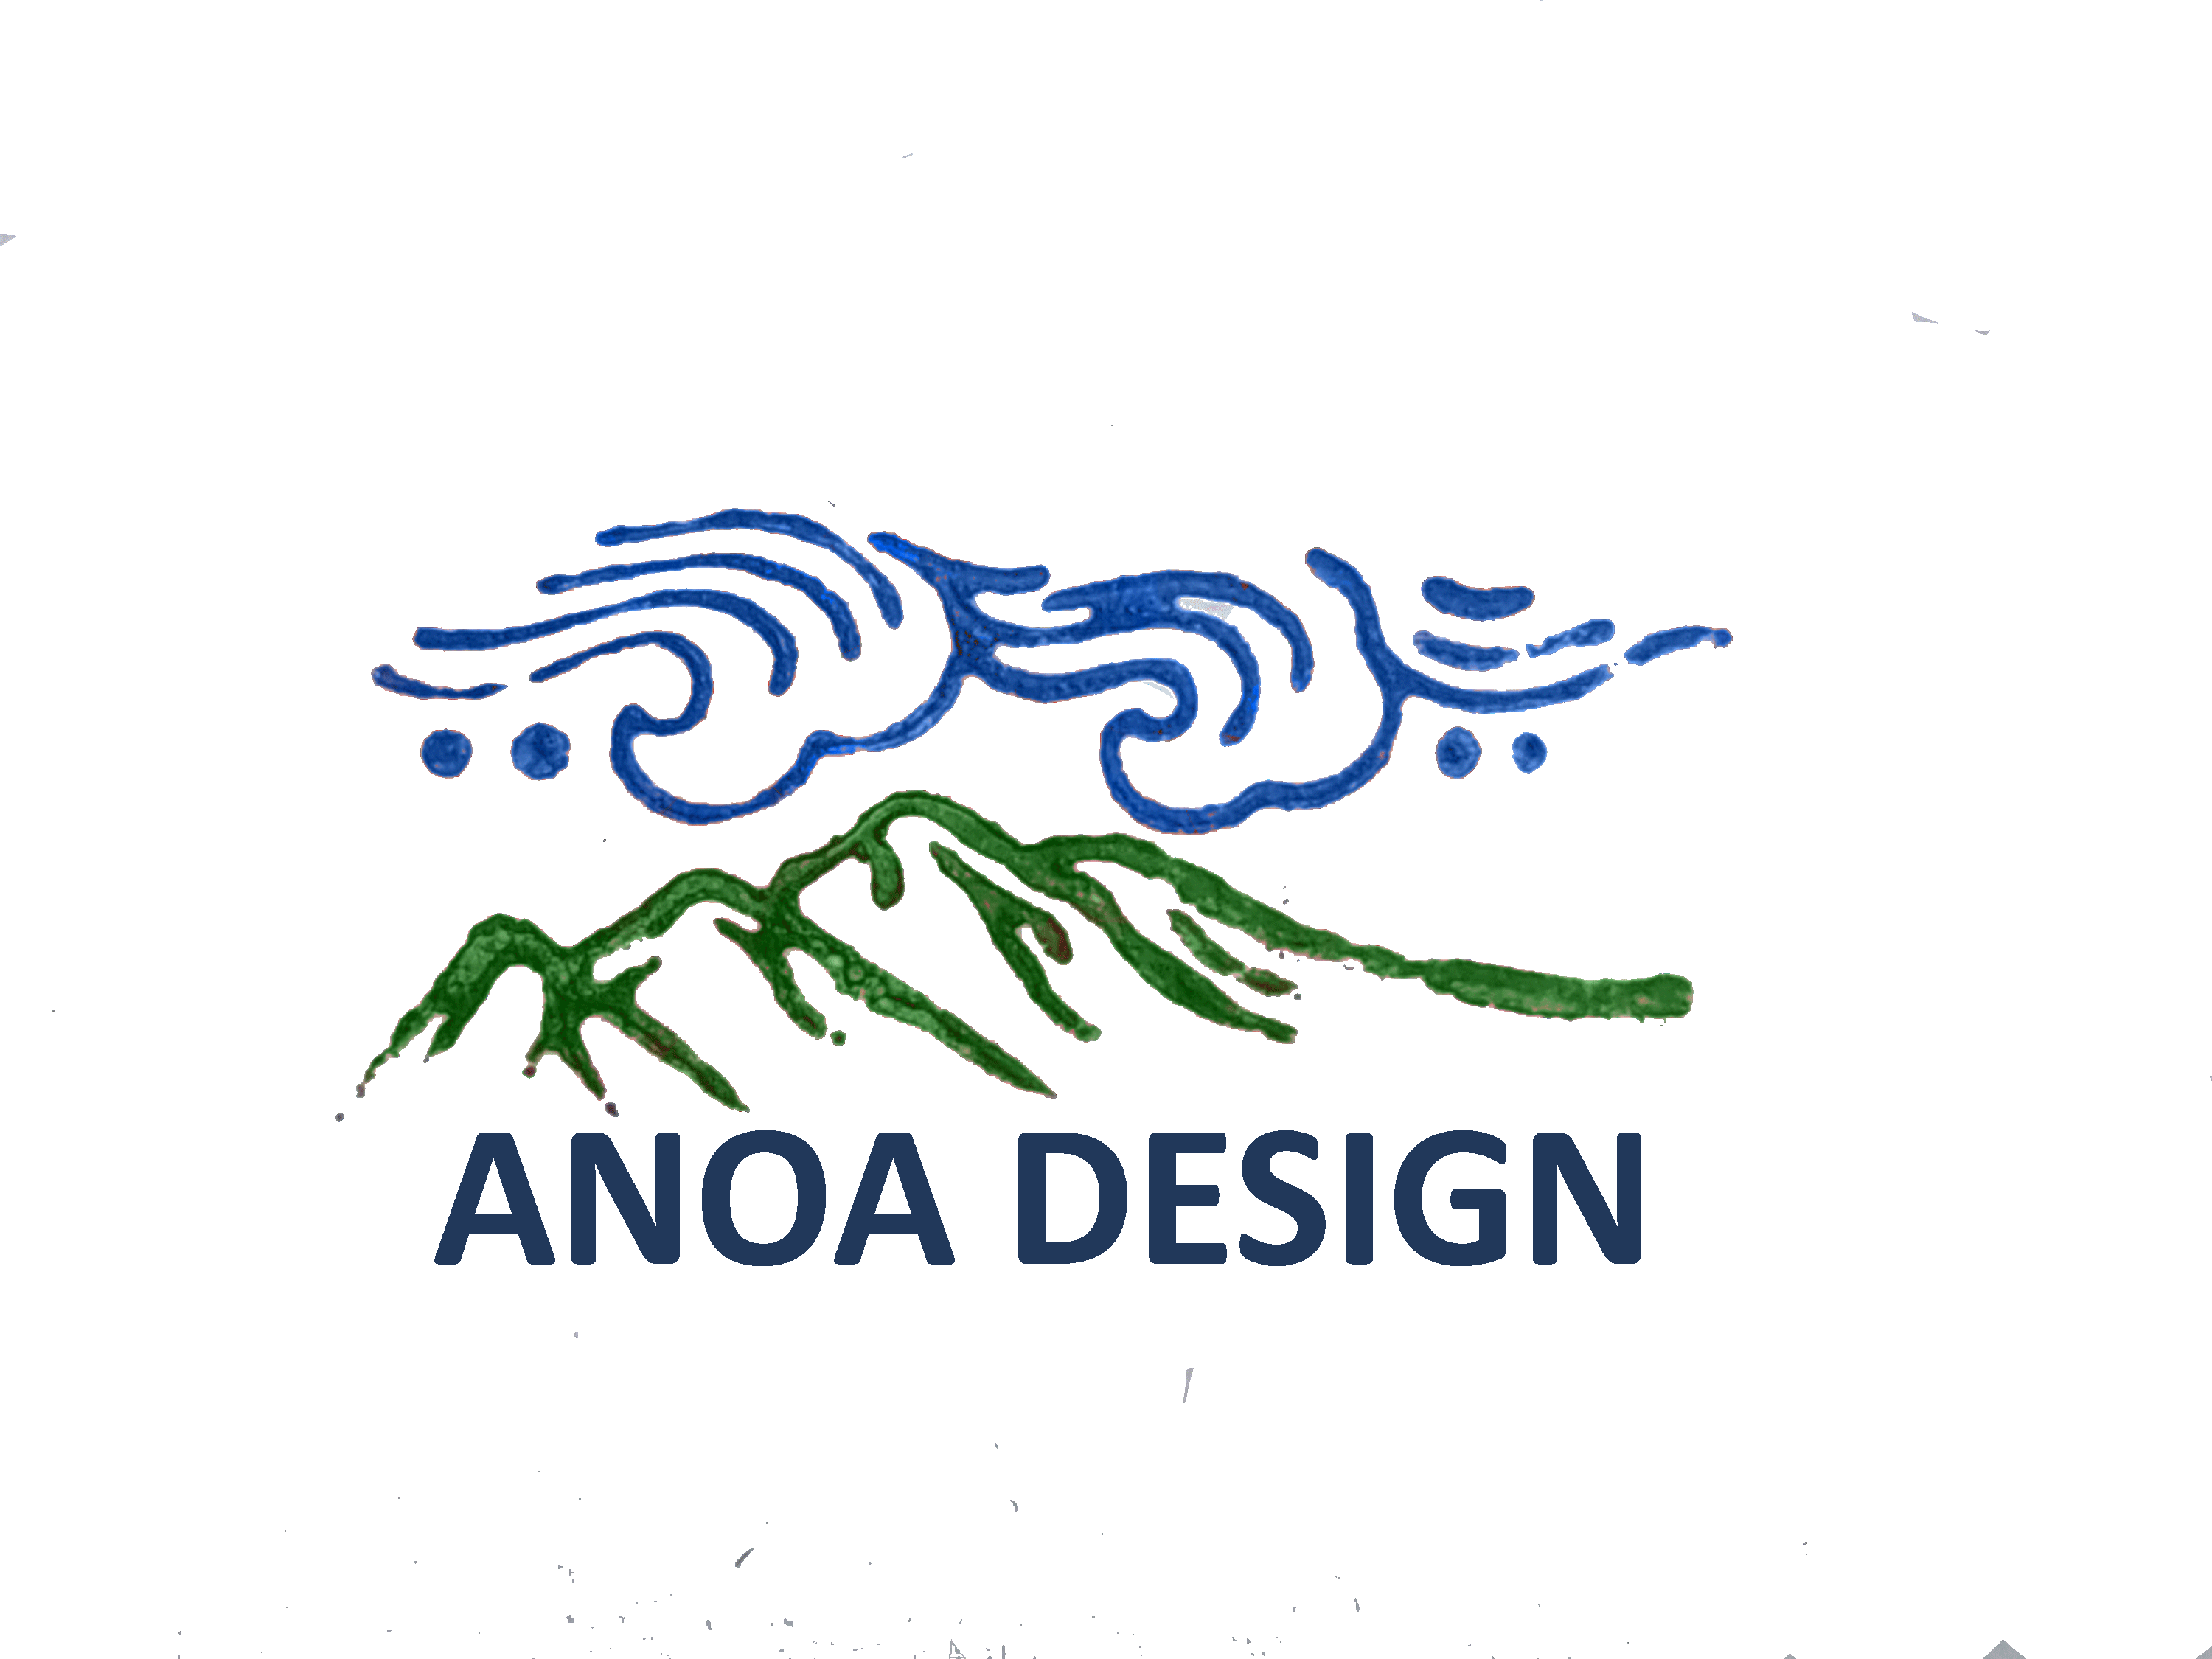 Anoa Design Supplies